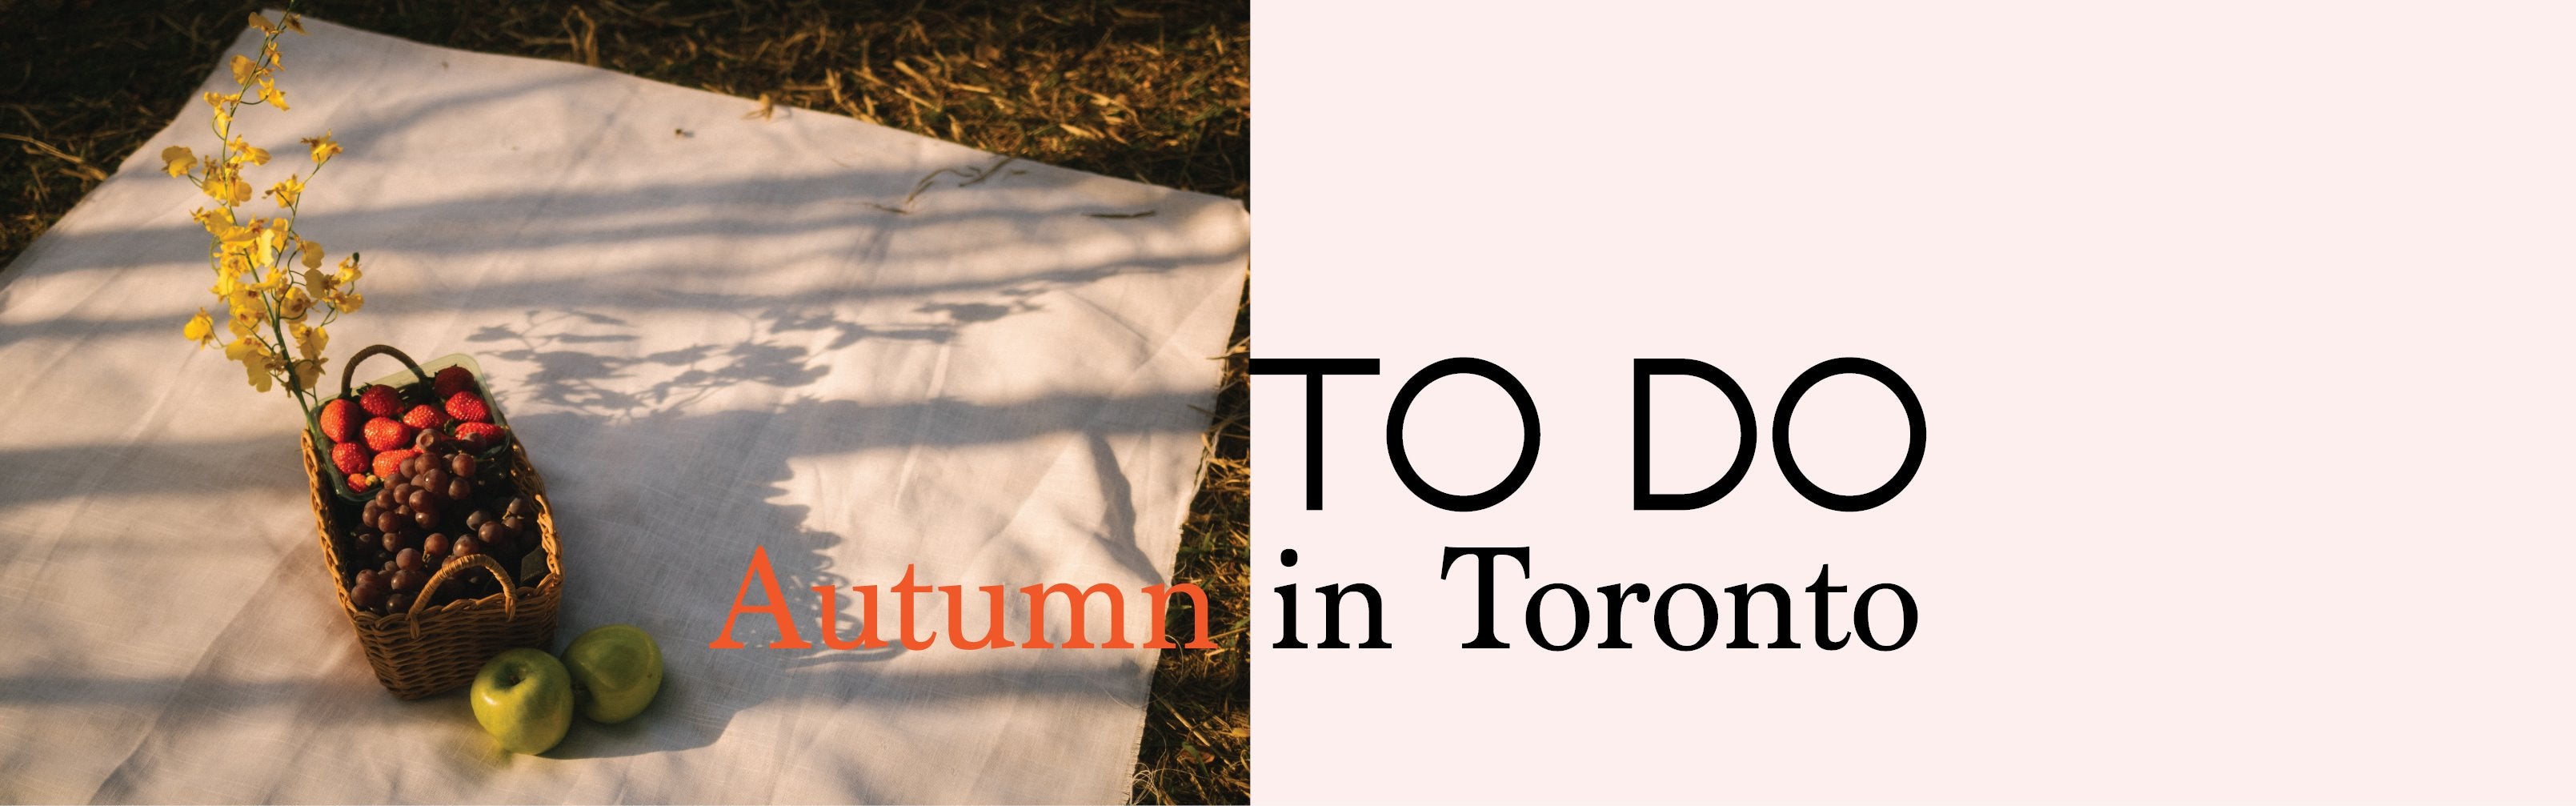 To Do: Autumn in Toronto